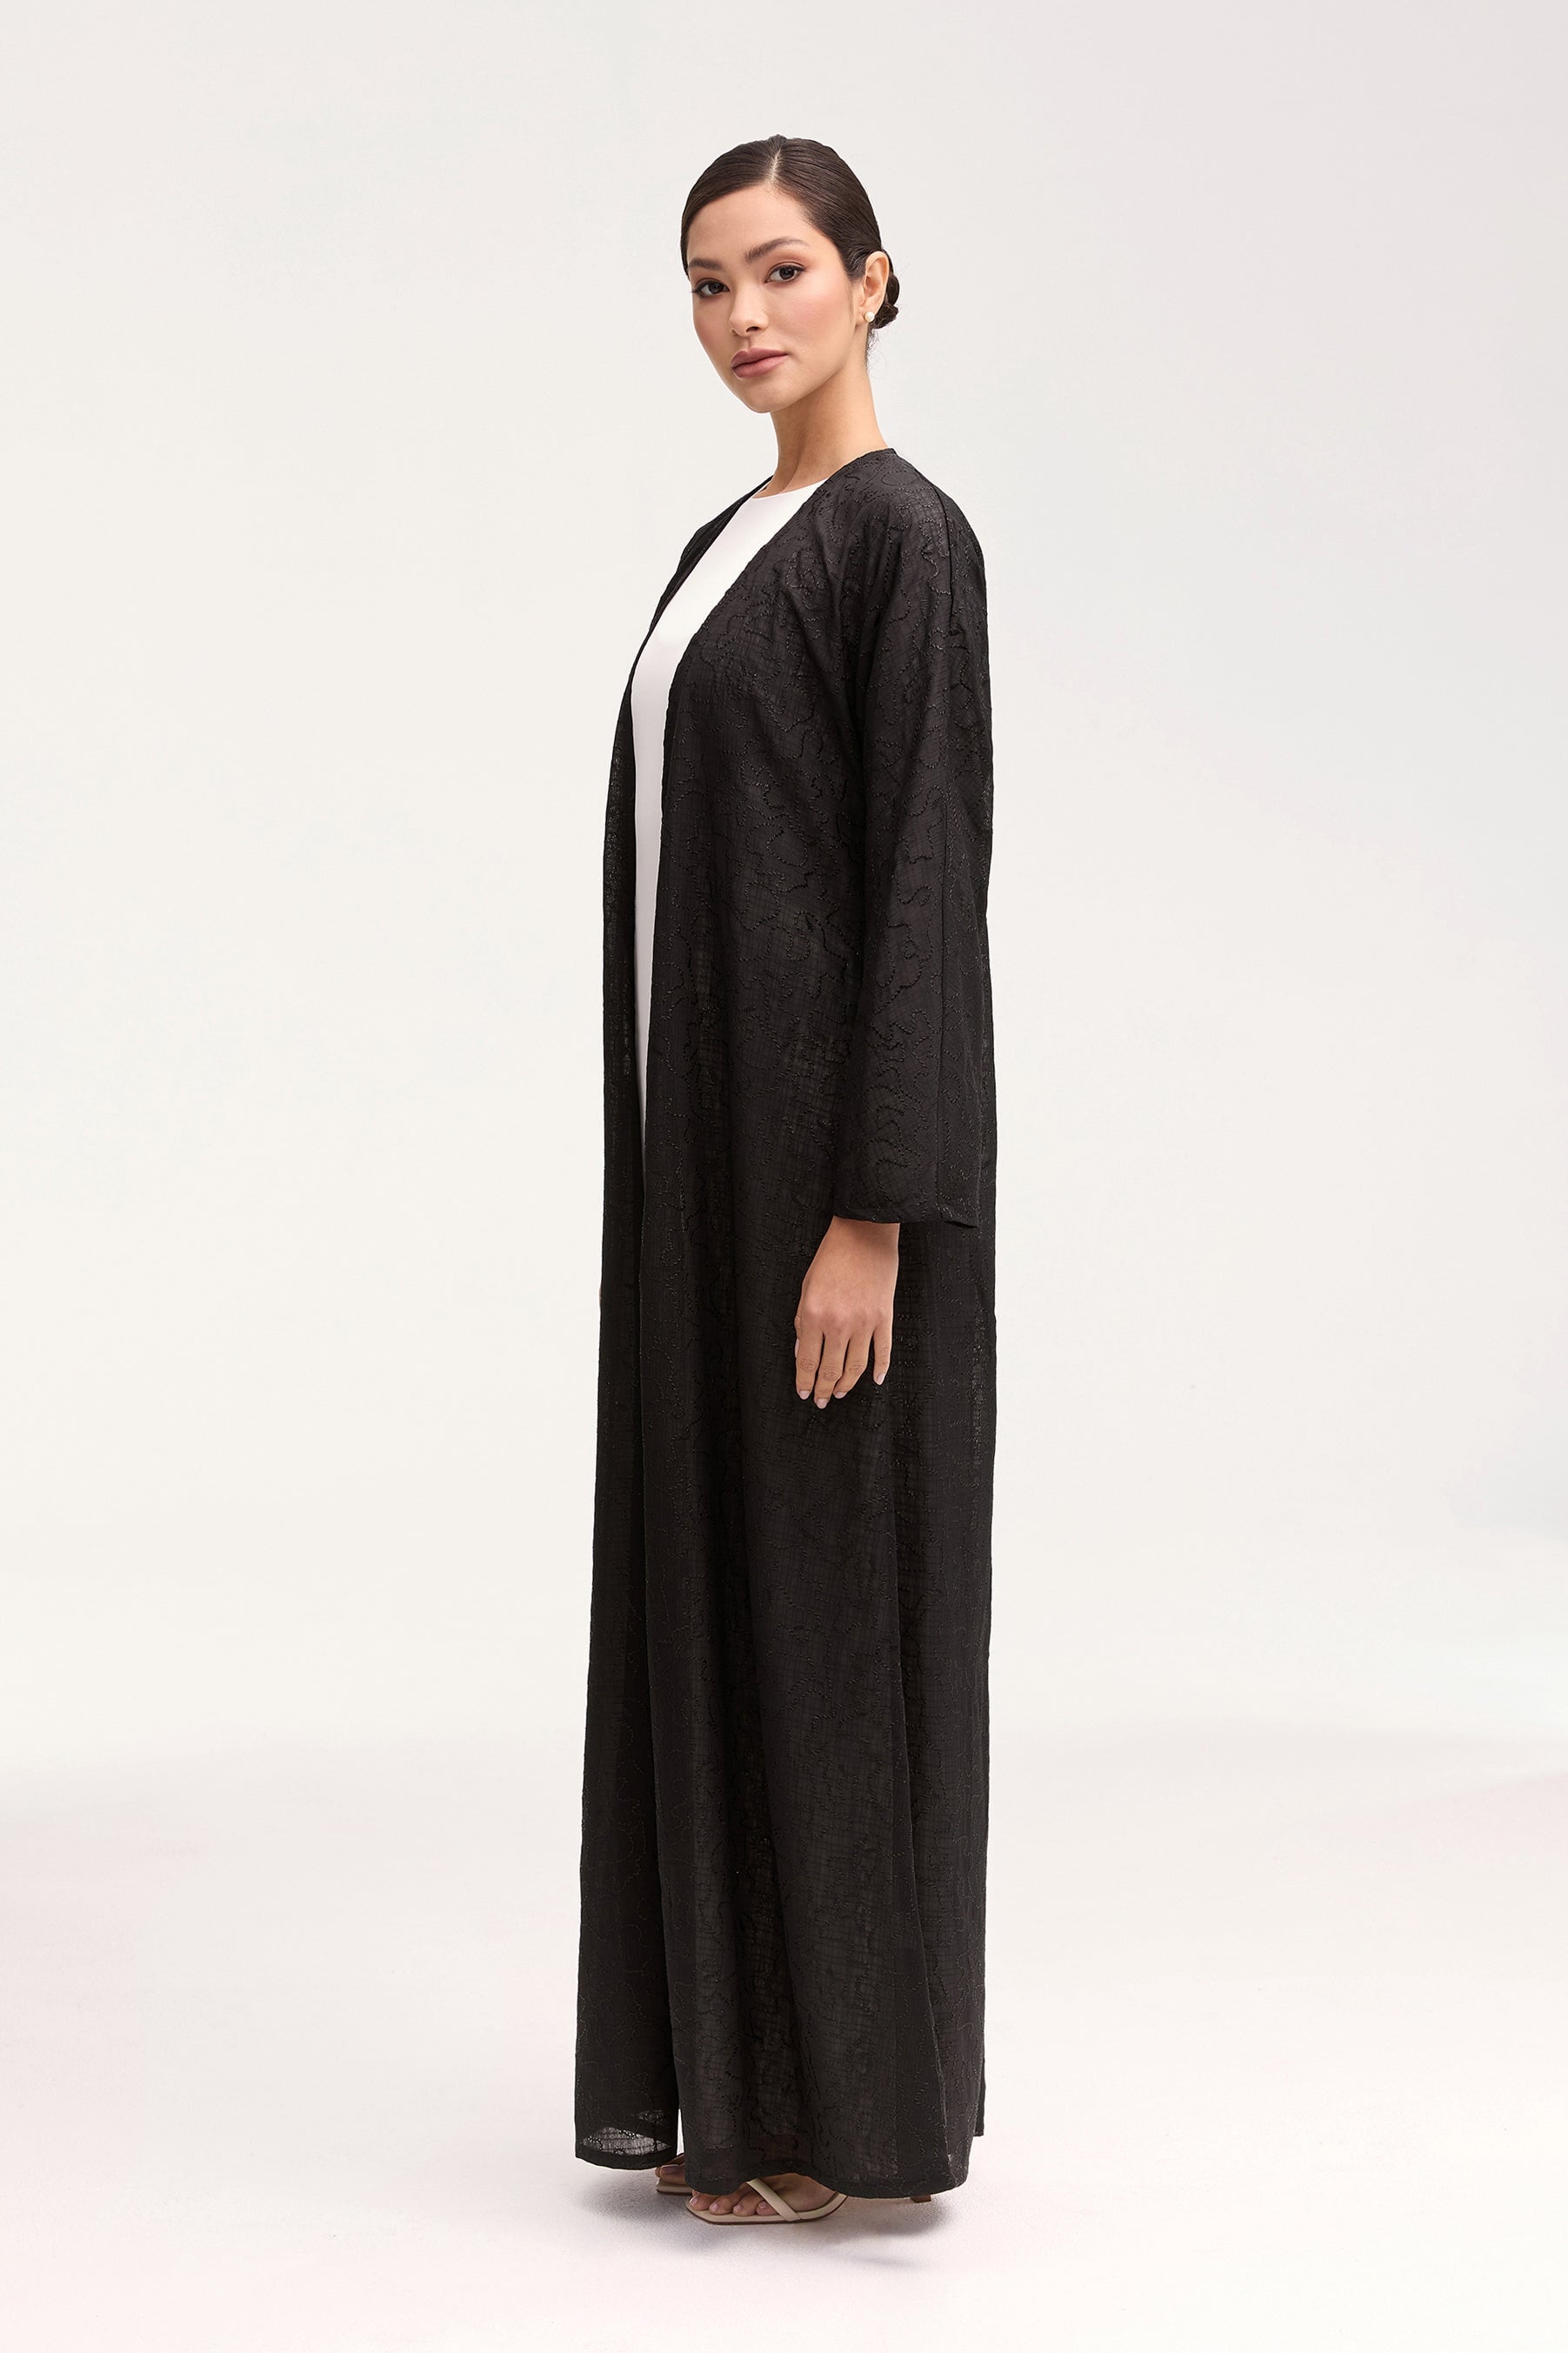 Malak Embroidered Open Abaya - Black Clothing Veiled 